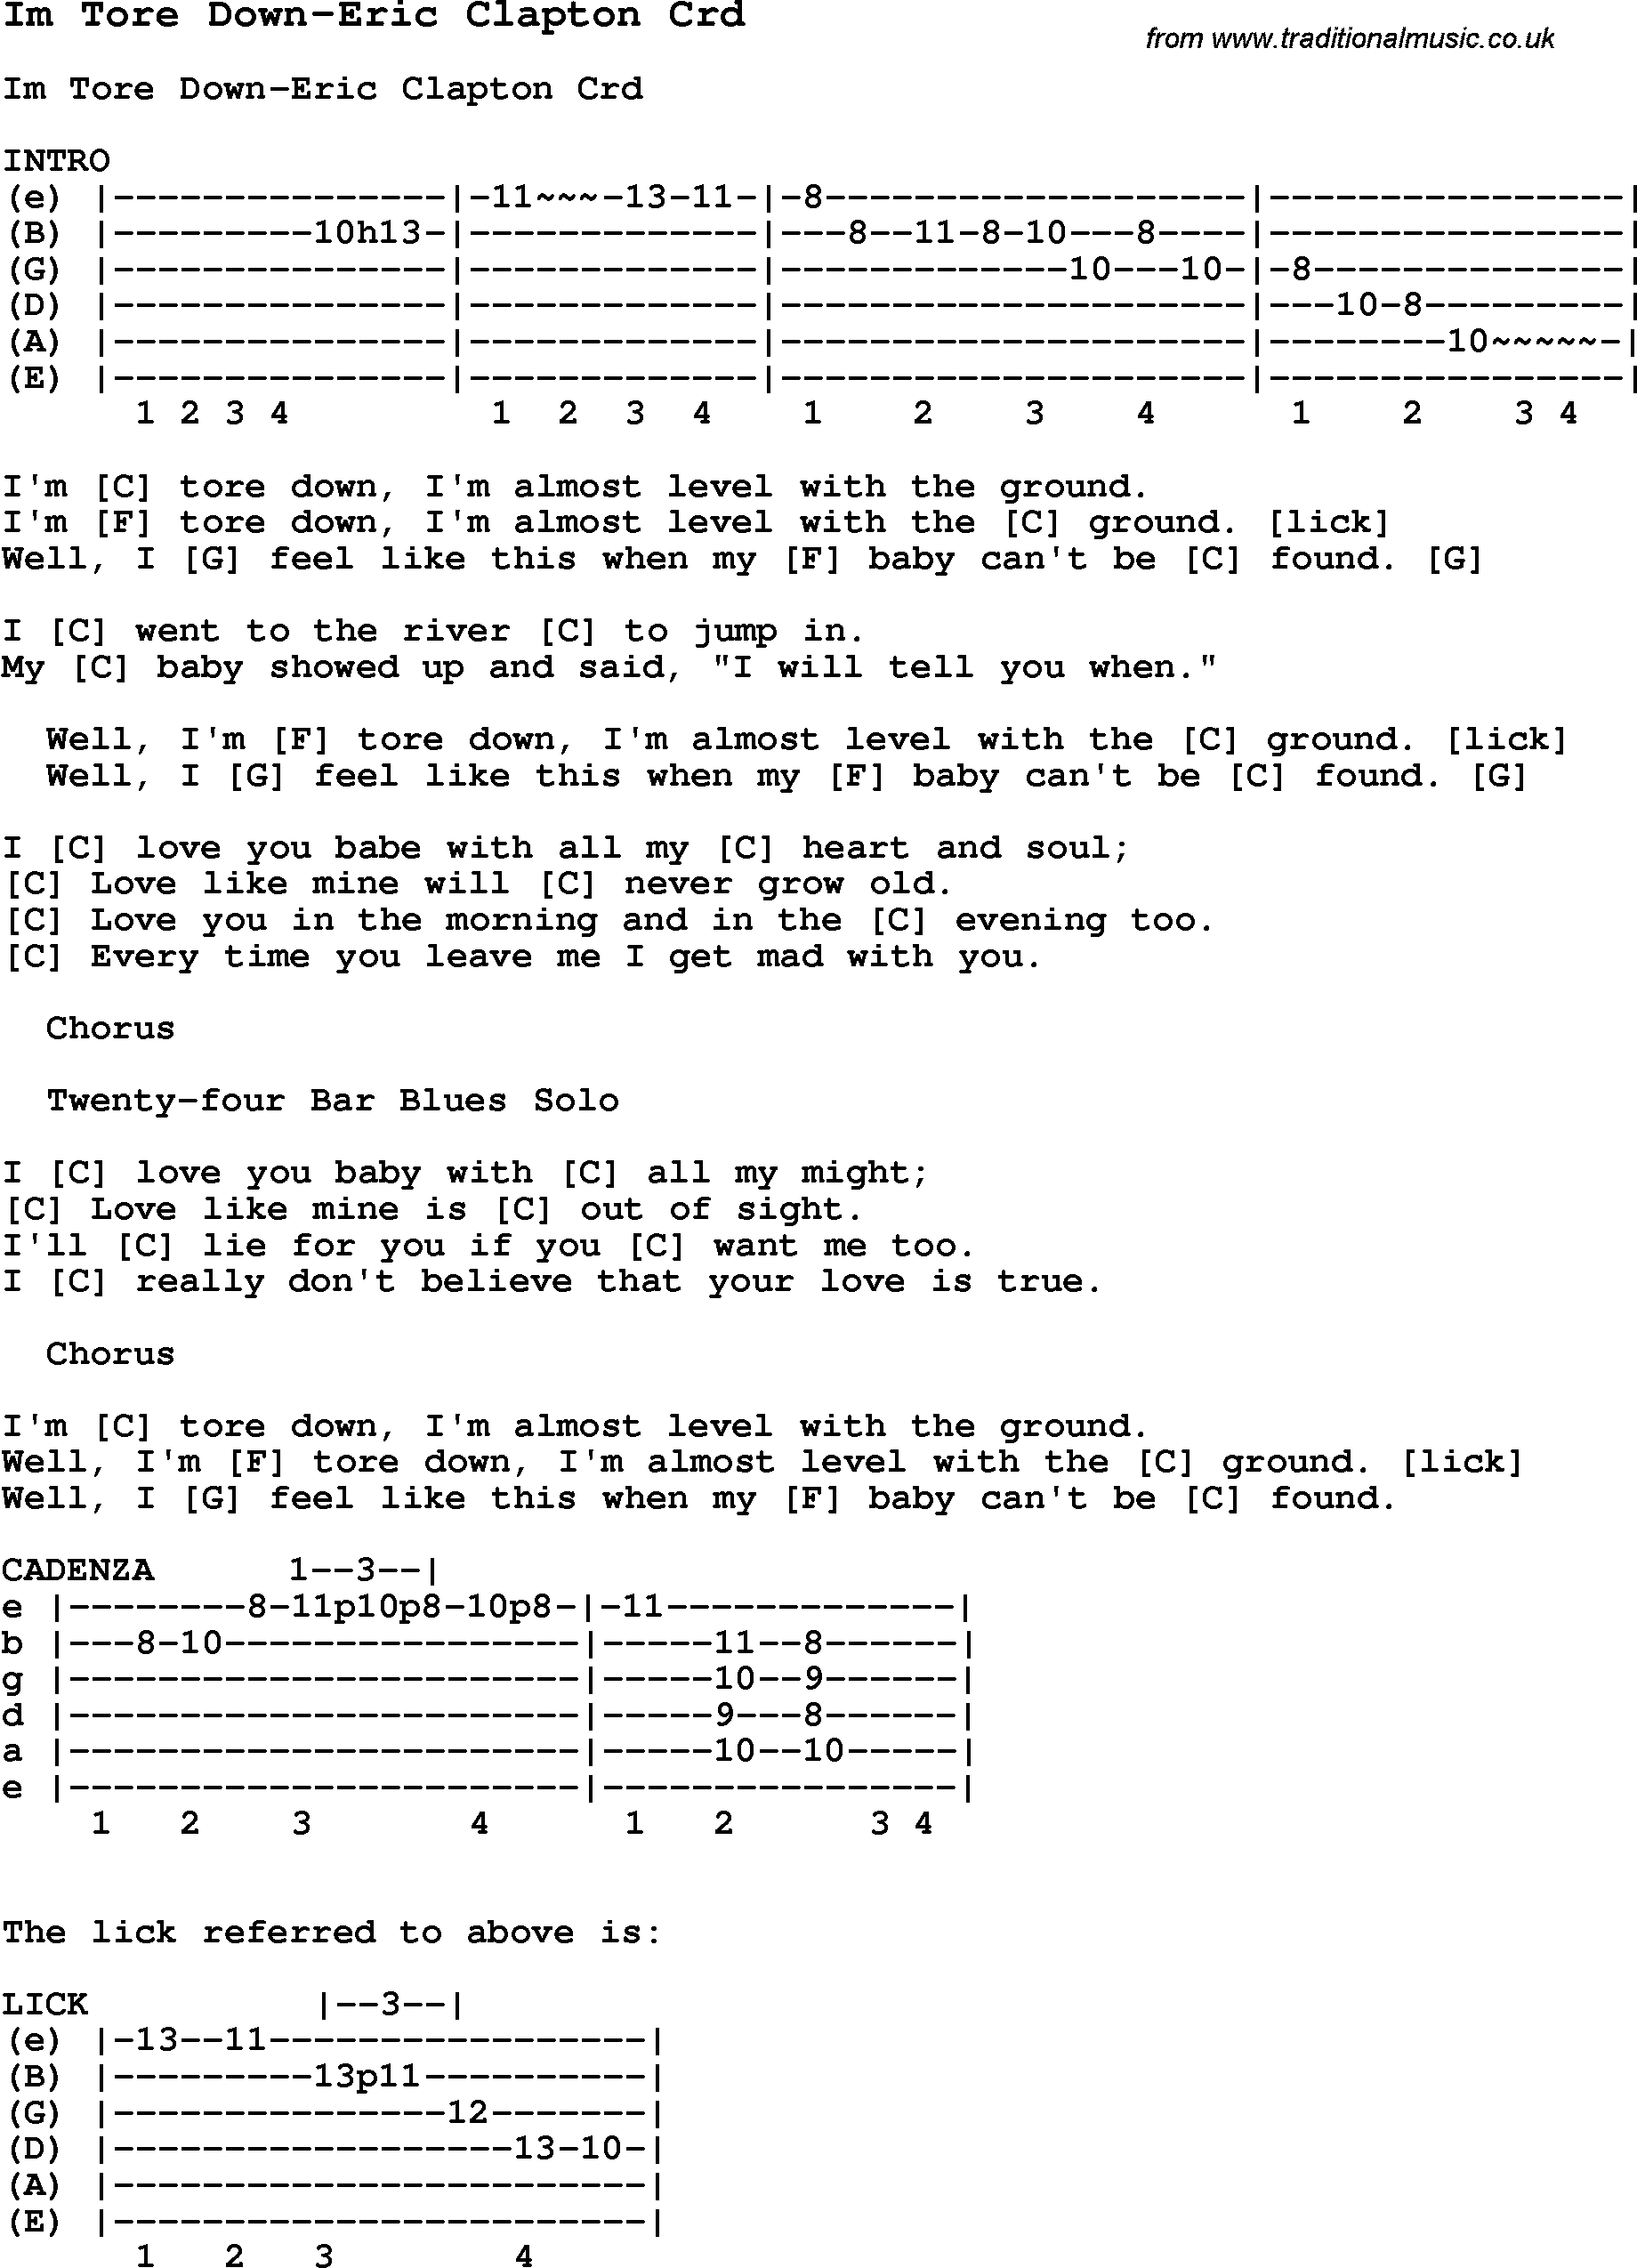 Skiffle Song Lyrics for Im Tore Down-Eric Clapton with chords for Mandolin, Ukulele, Guitar, Banjo etc.